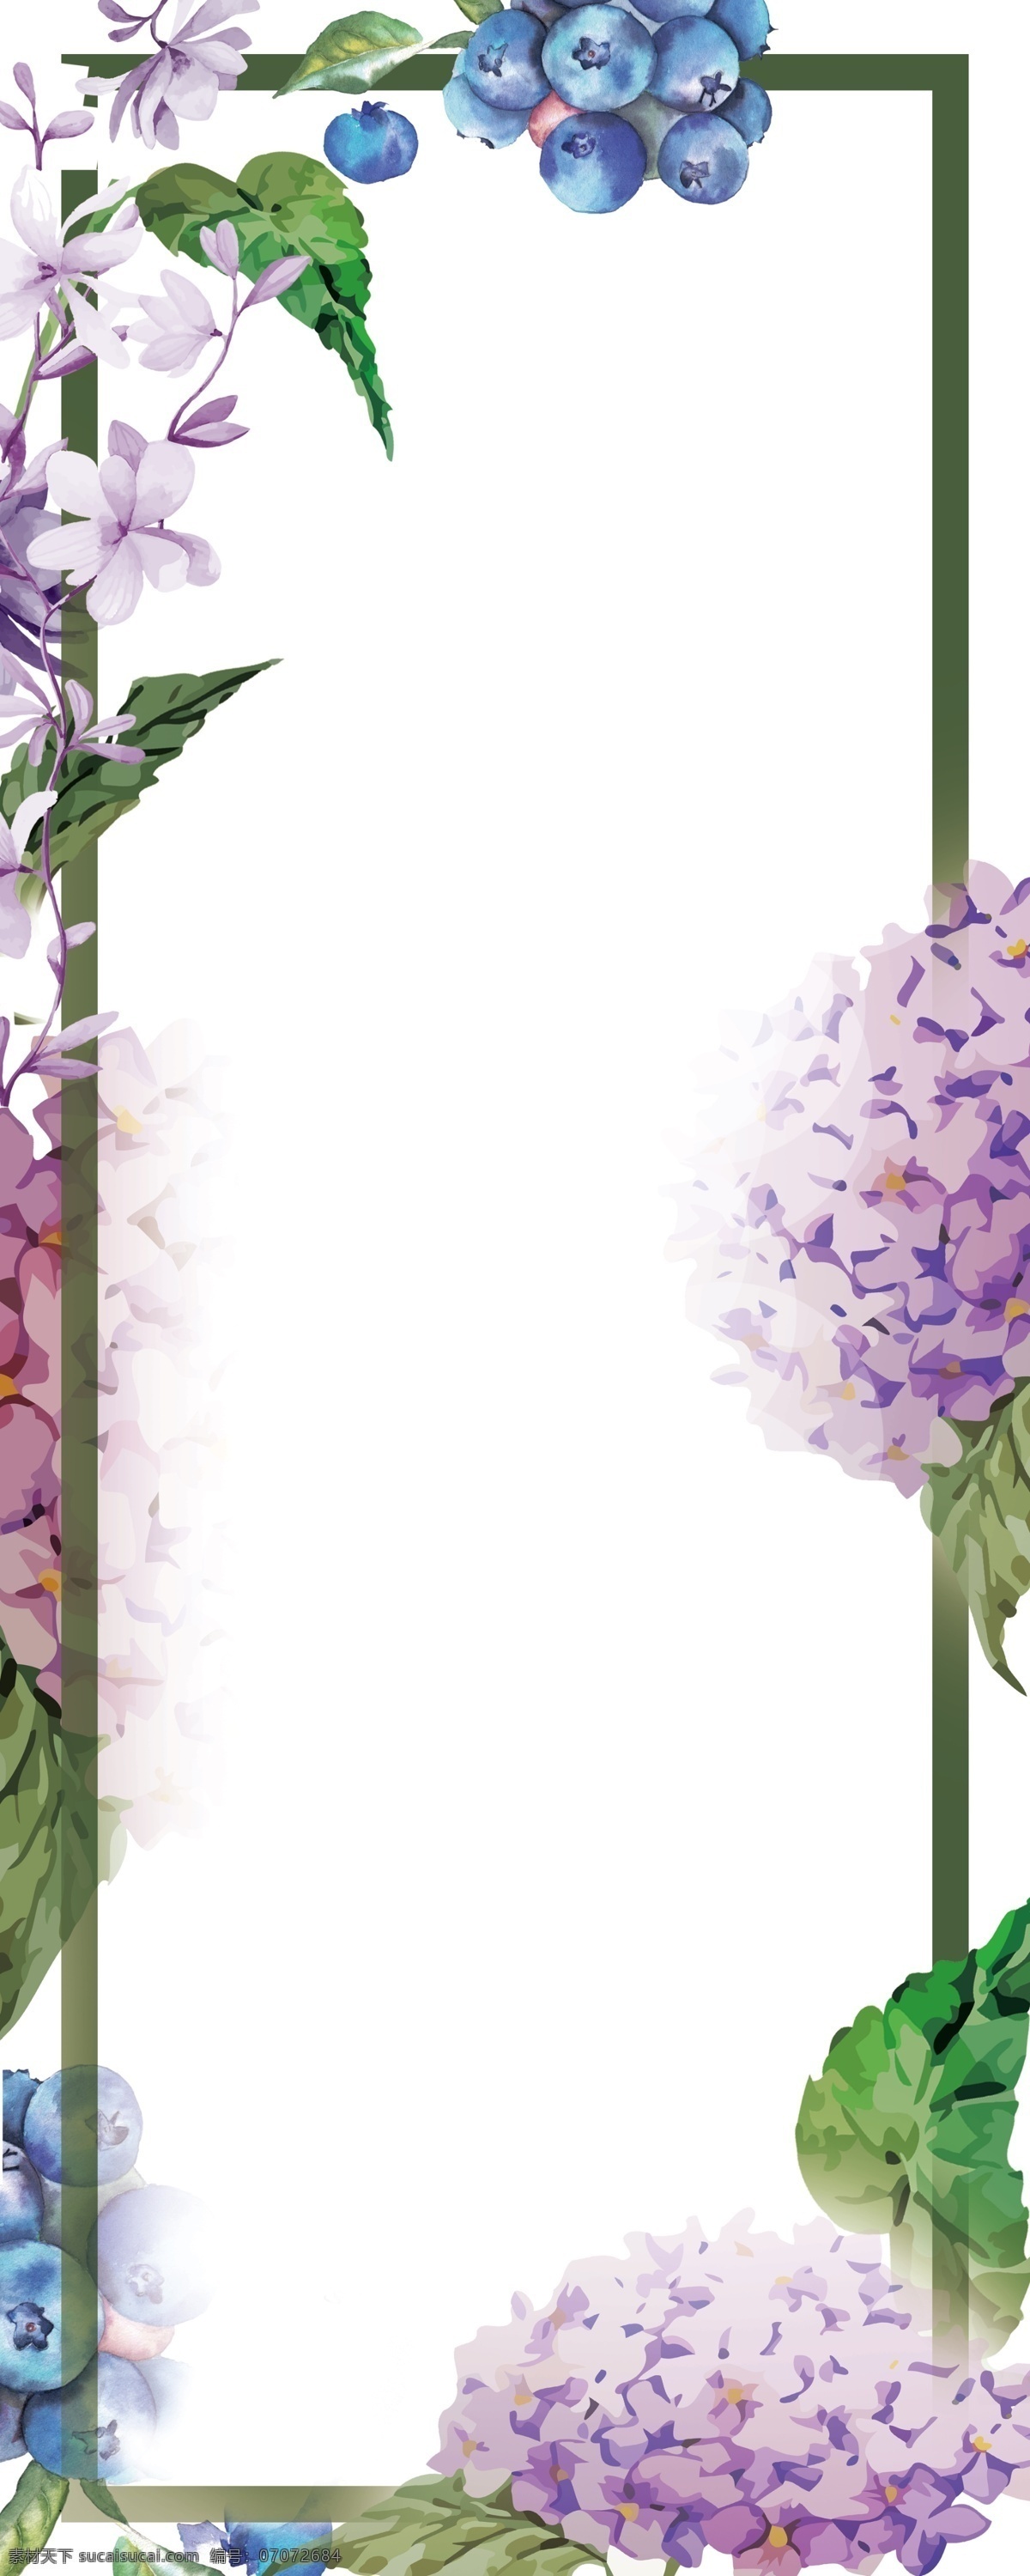 手绘 紫罗兰 花束 易拉宝 背景 图 绣球花束 树叶 蓝莓 背景图 花藤 紫色花束 紫色藤蔓 分层 背景素材